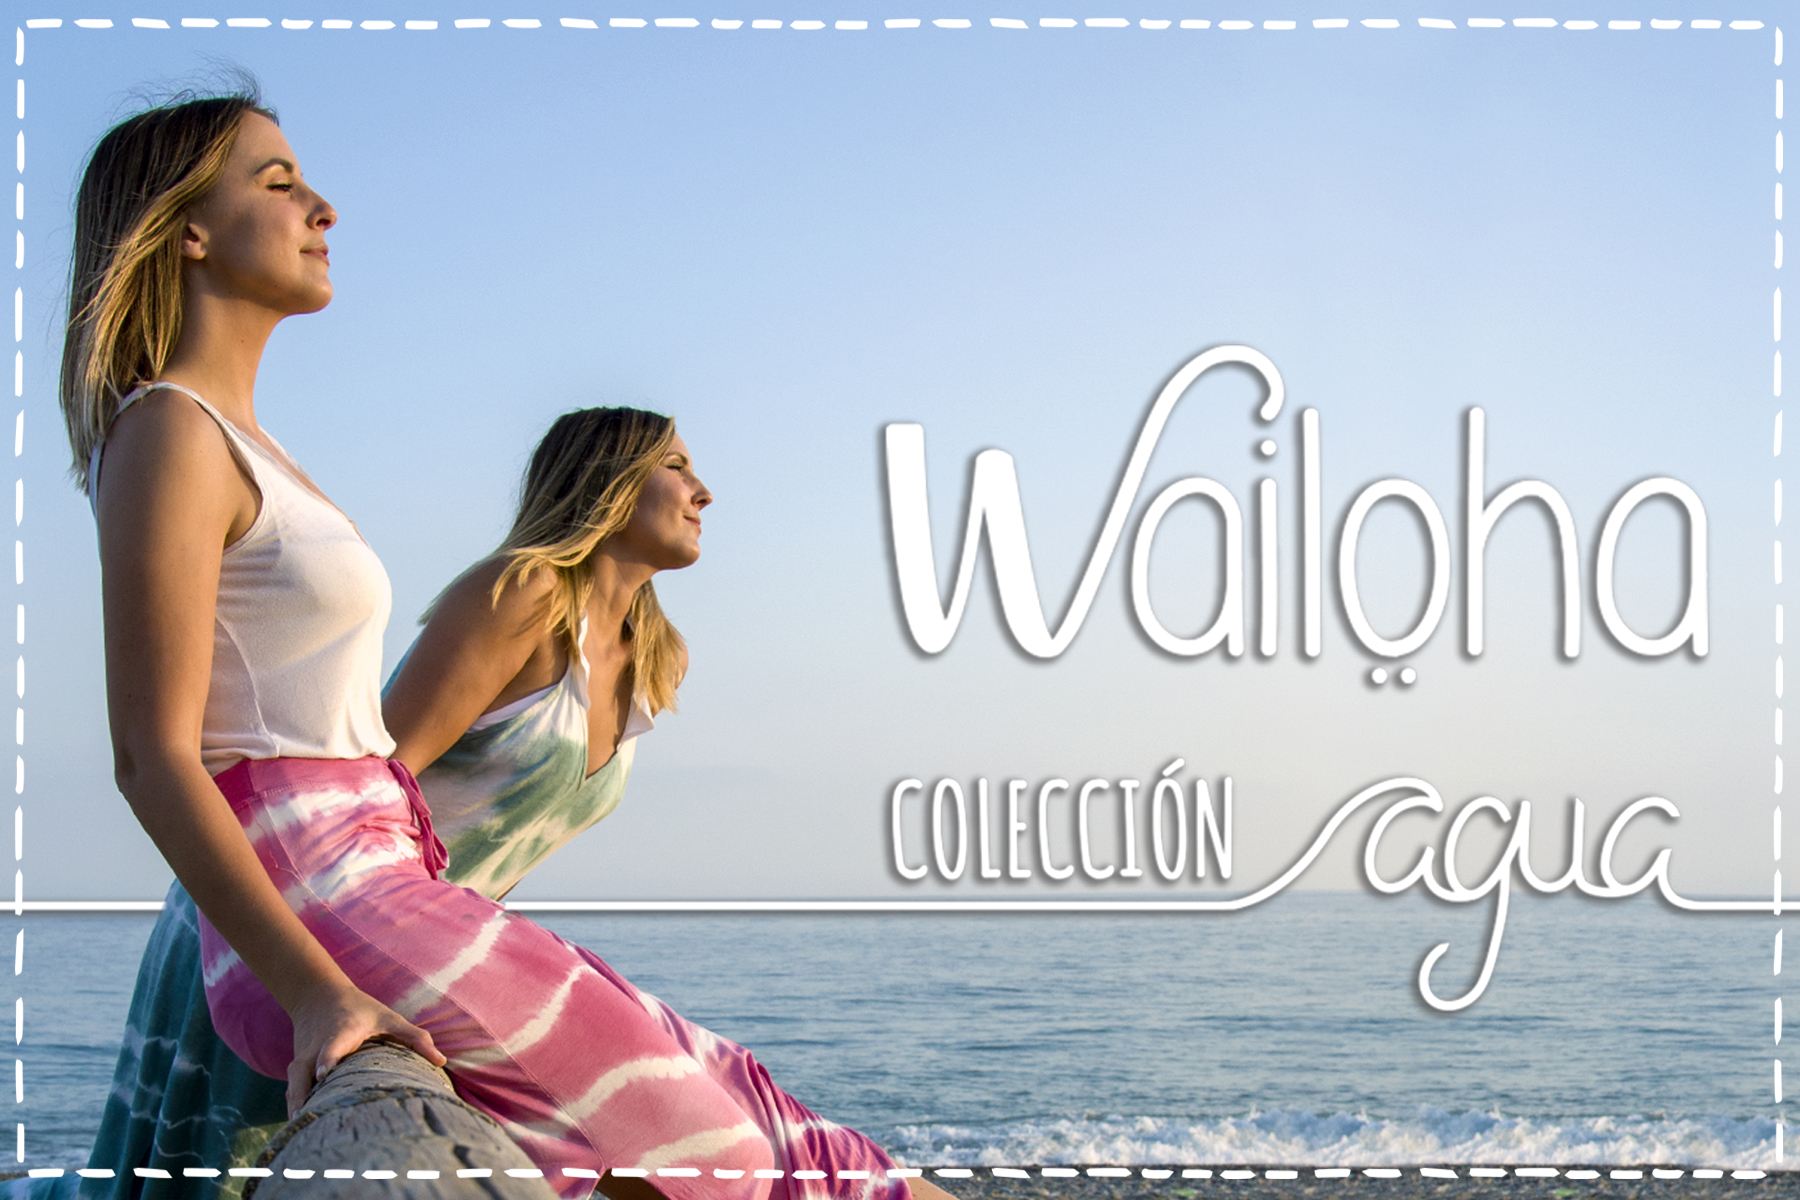 Colección Agua de Wailoha